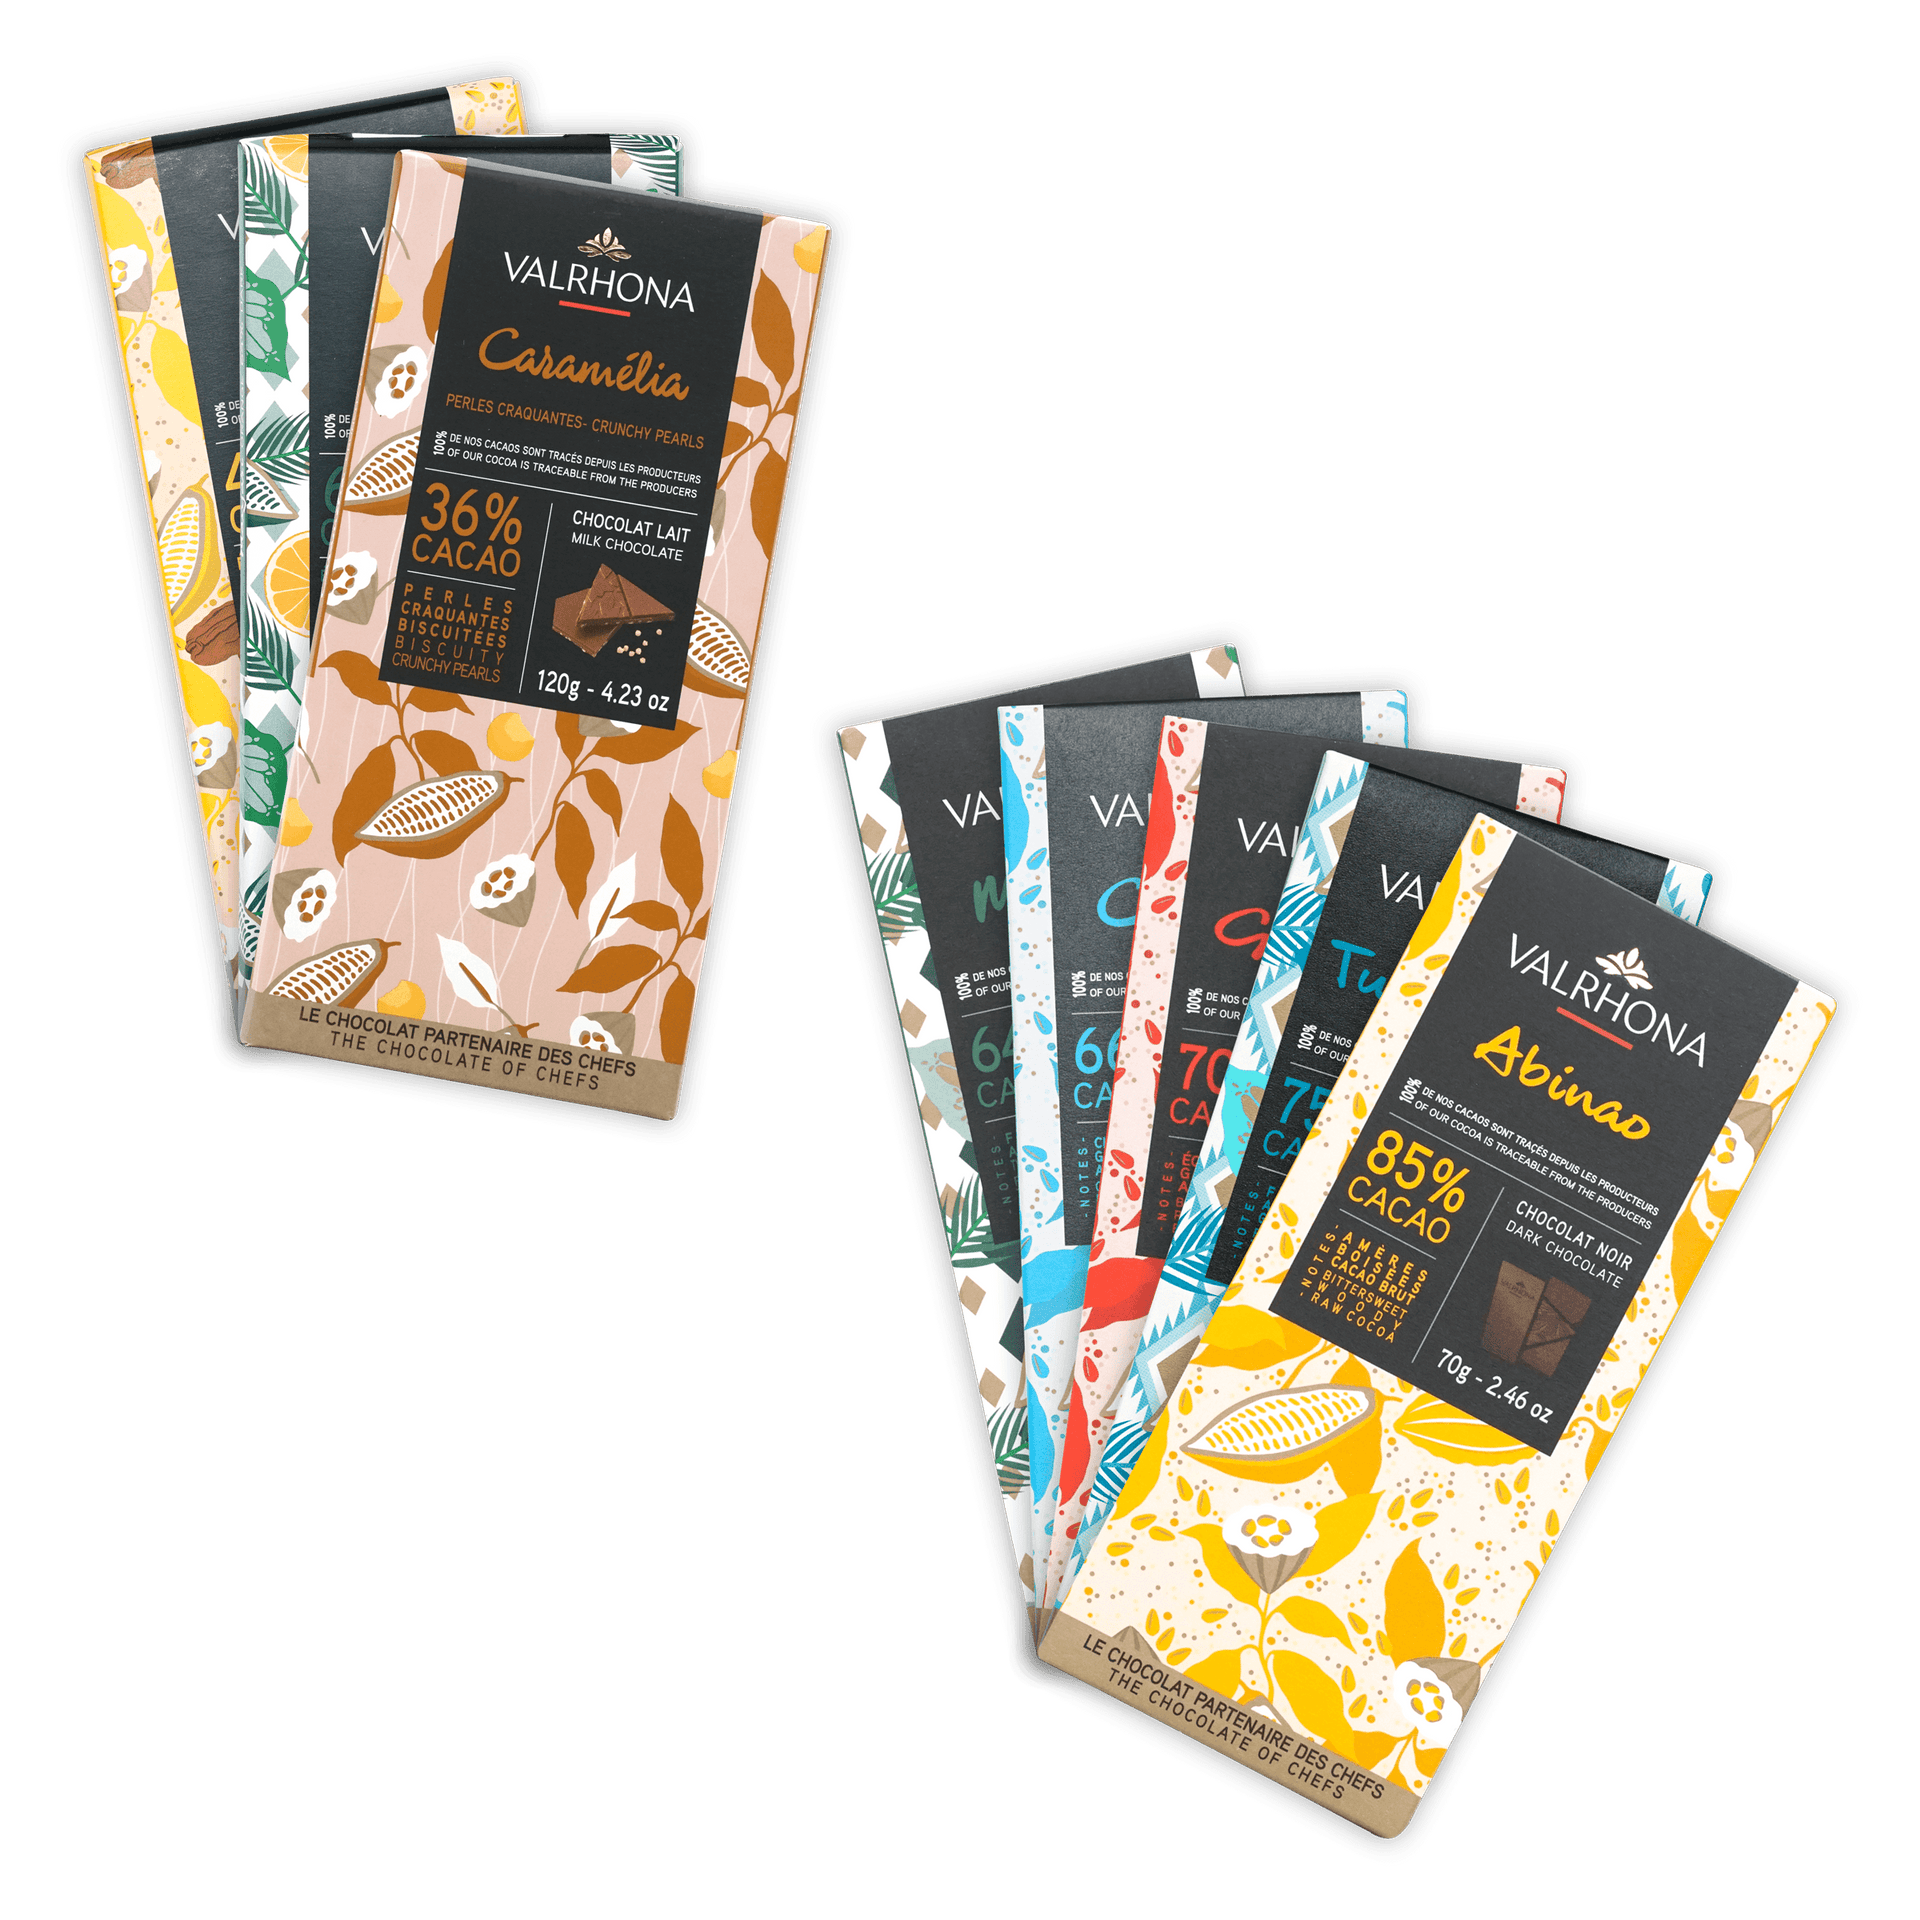 VALRHONA - Tablette de chocolat Andoa noir et au lait Organic Fair Trade